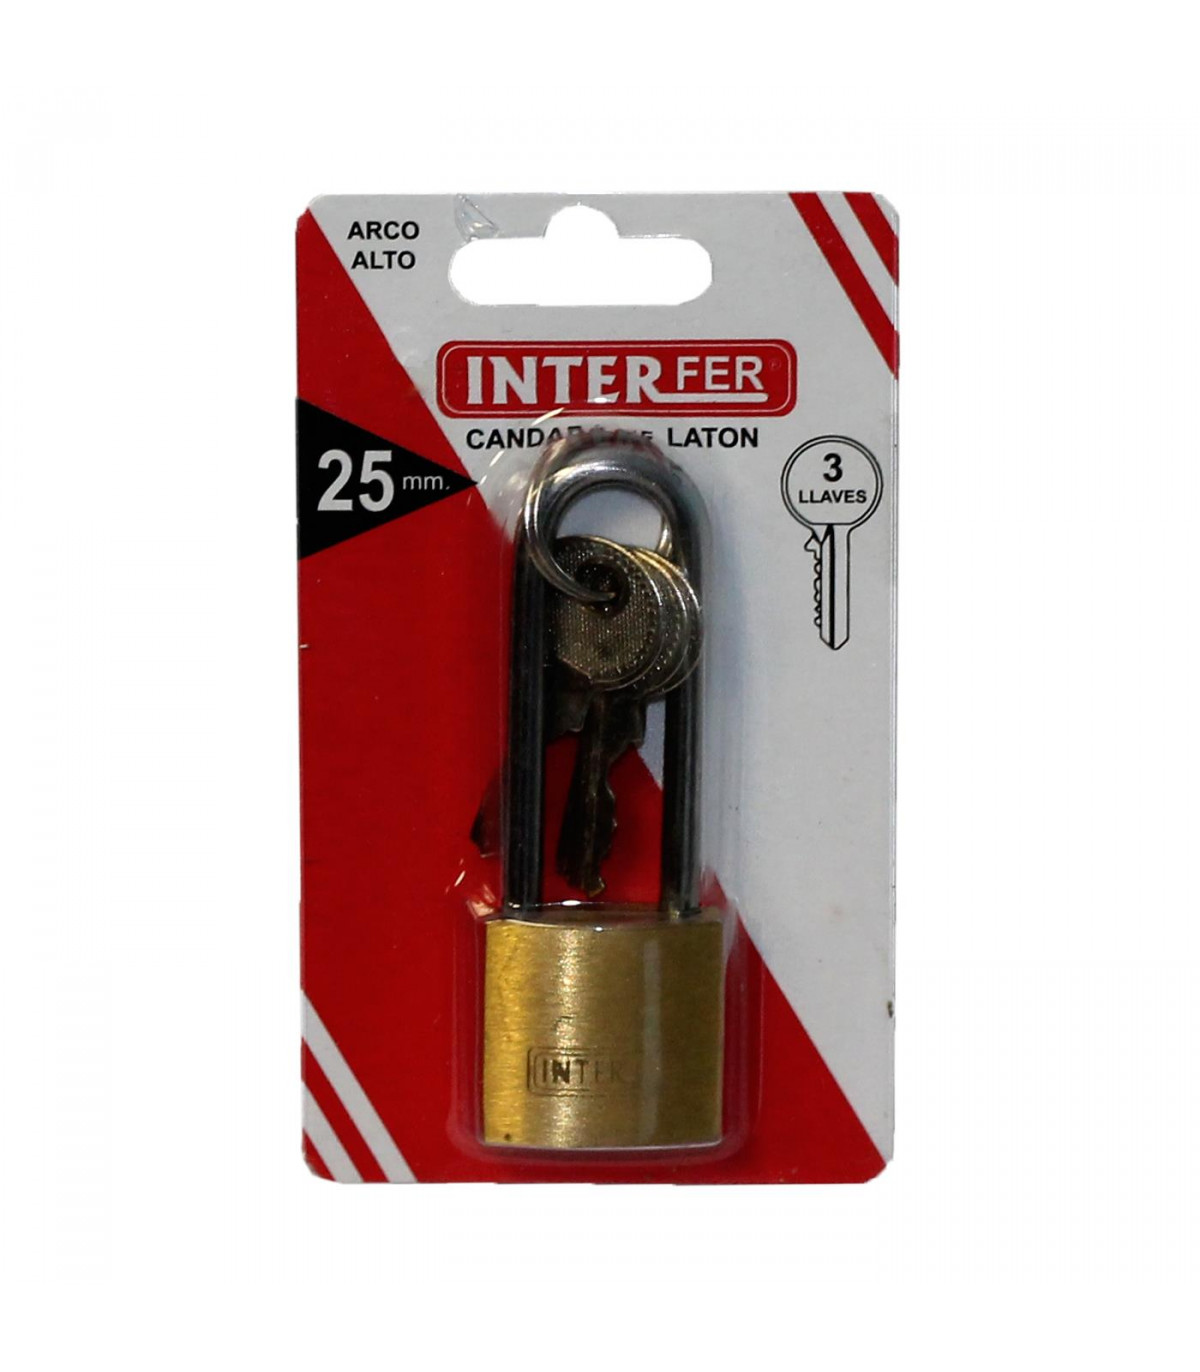 Interfer - Candado de latón, arco alto endurecido de acero, 25 mm, con 3  llaves para equipaje, taquillas de gimnasio, caja herra